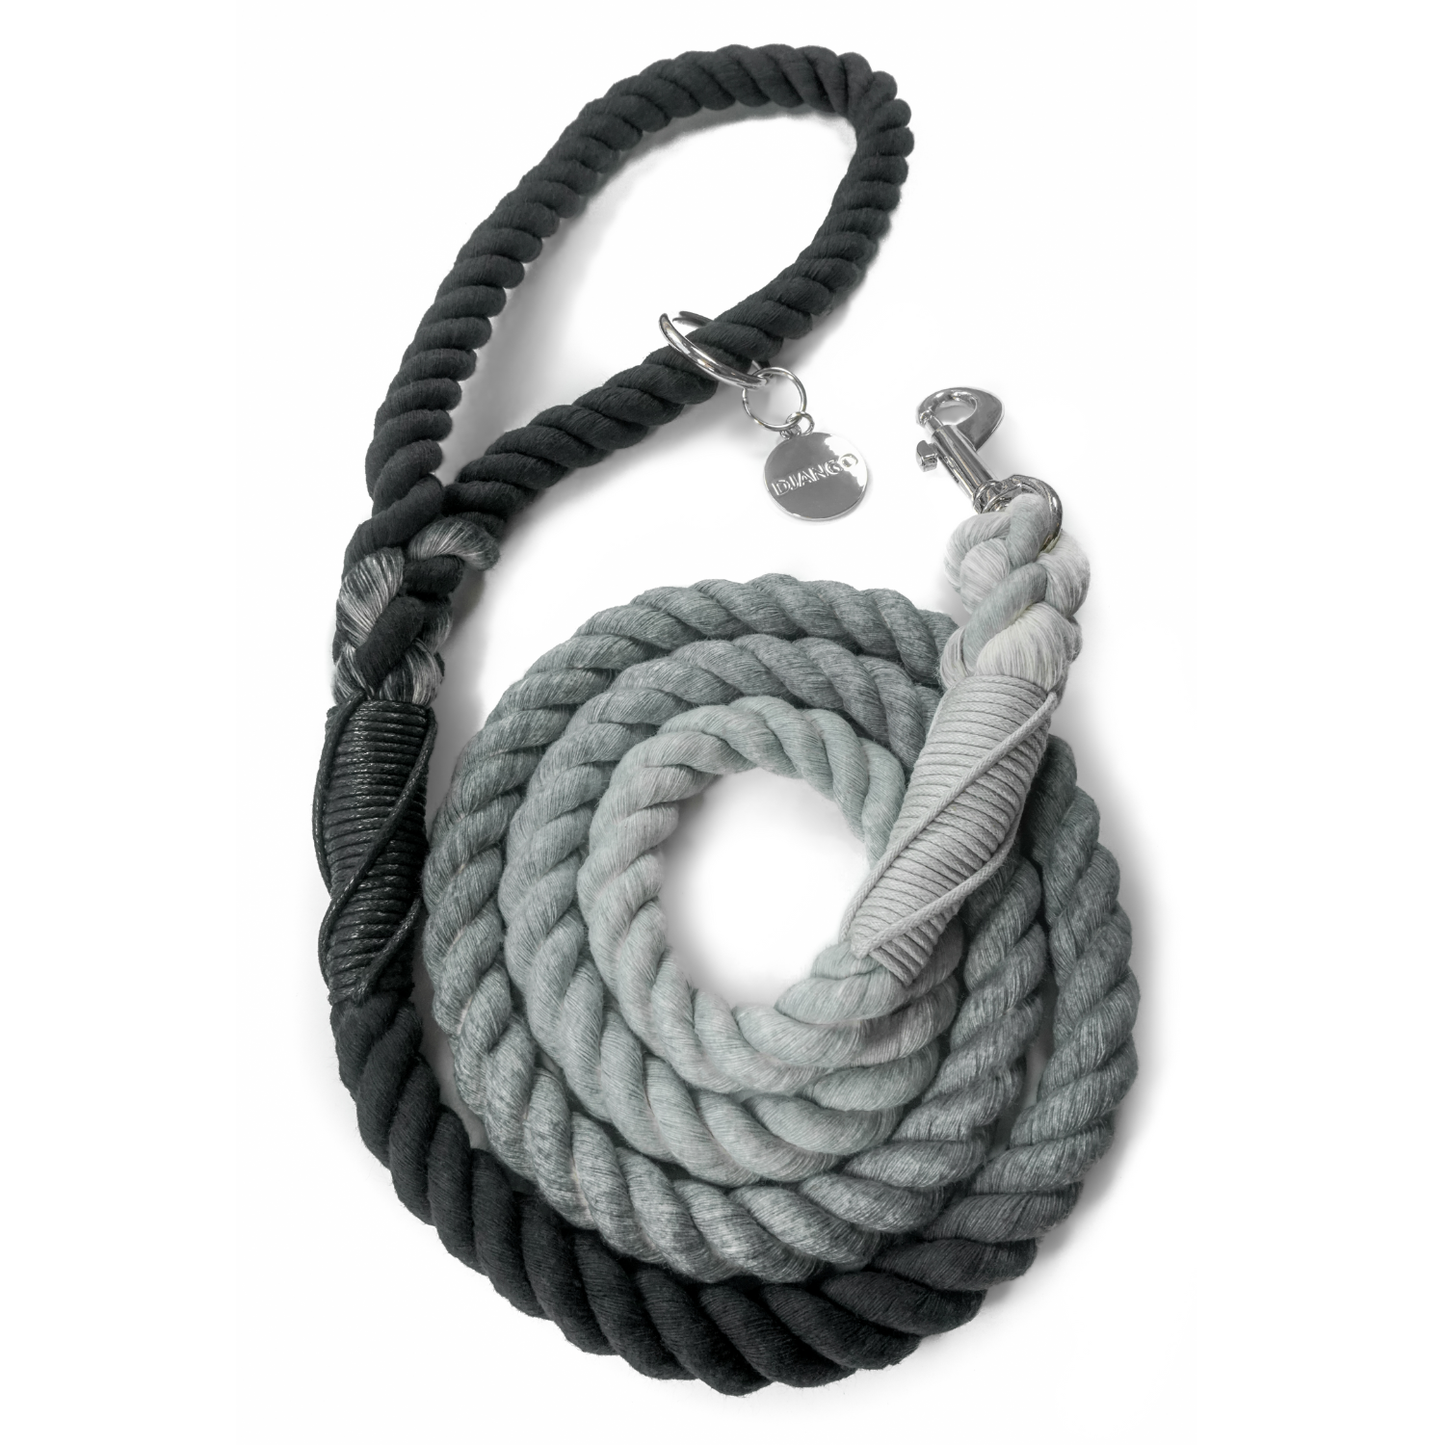 Cotton Rope Dog Leash Grey/Black Image